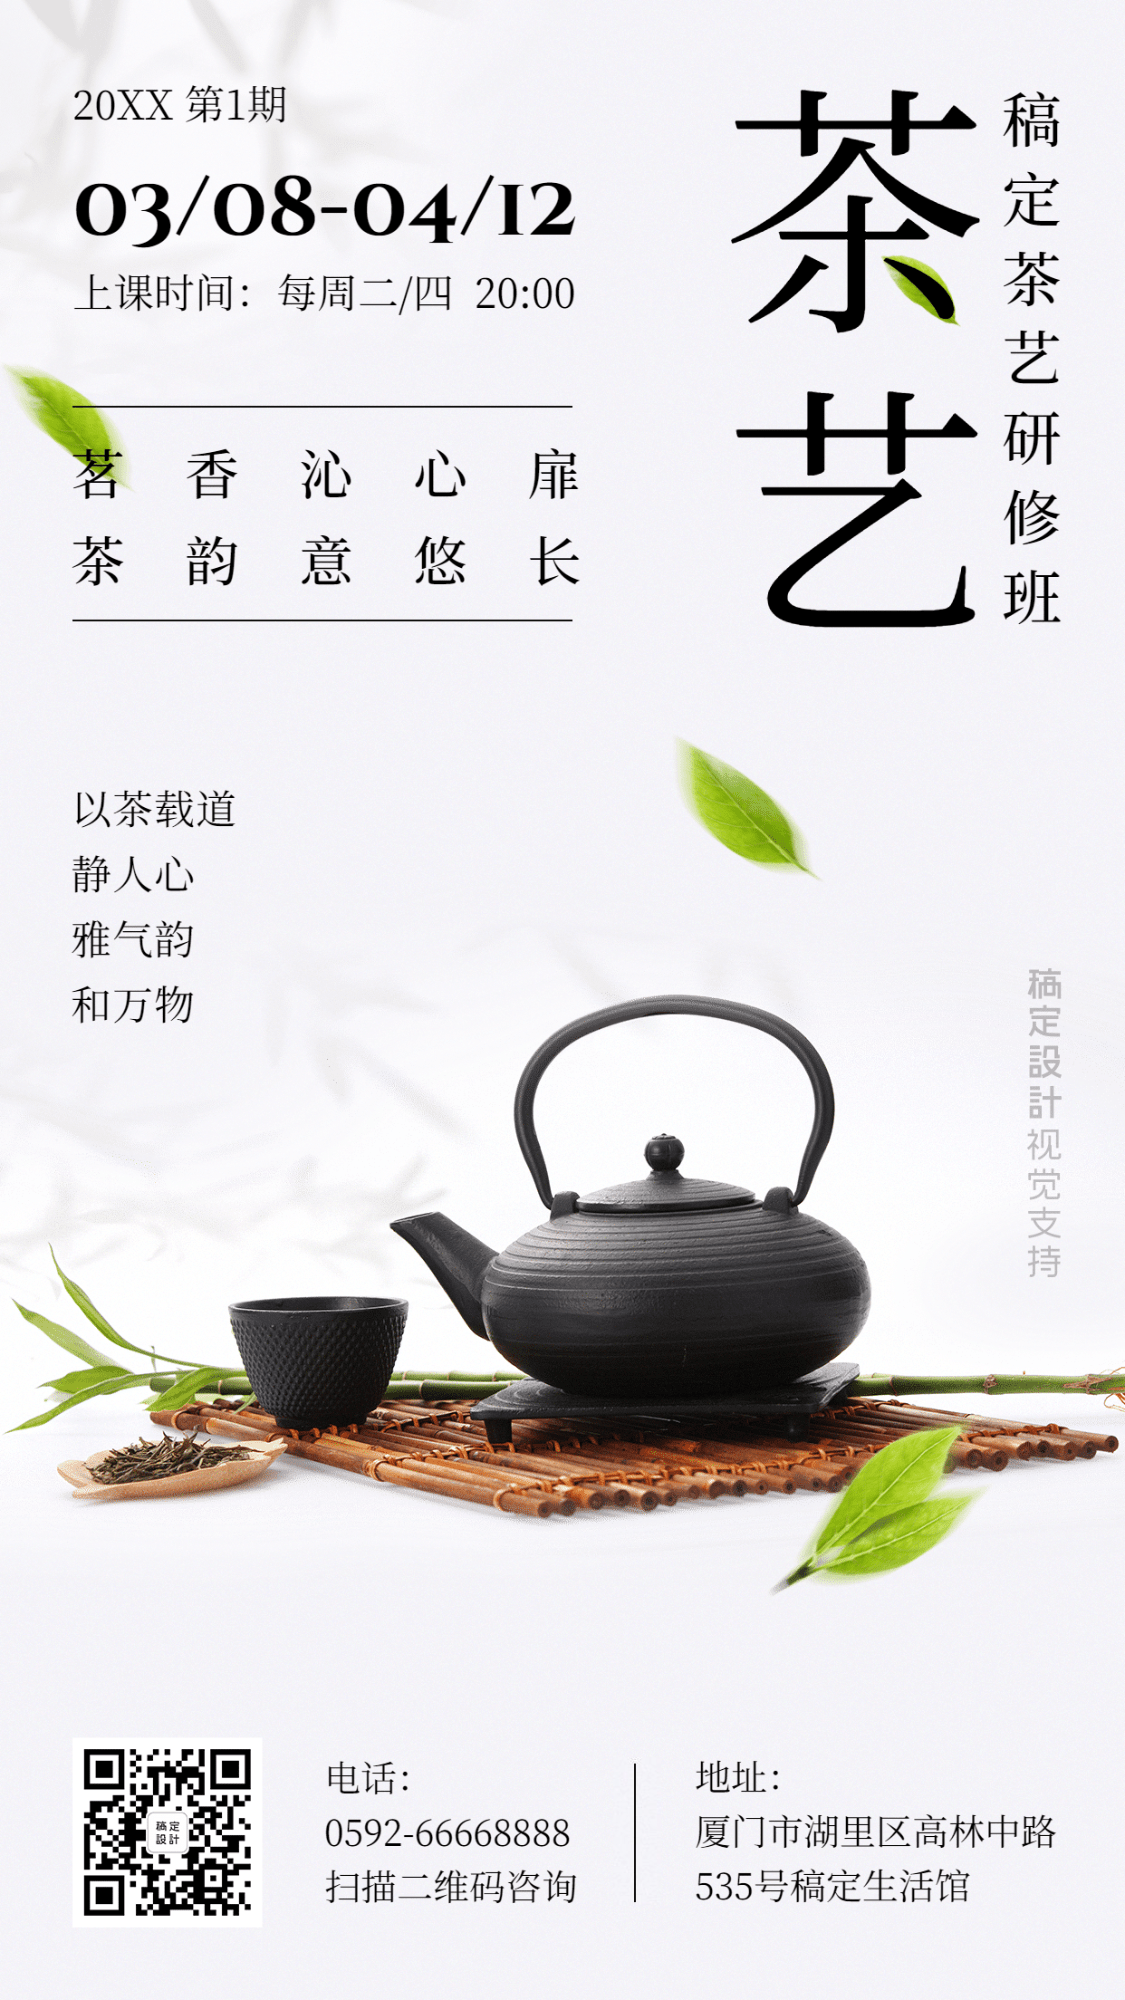 日系茶艺课程活动介绍手机海报